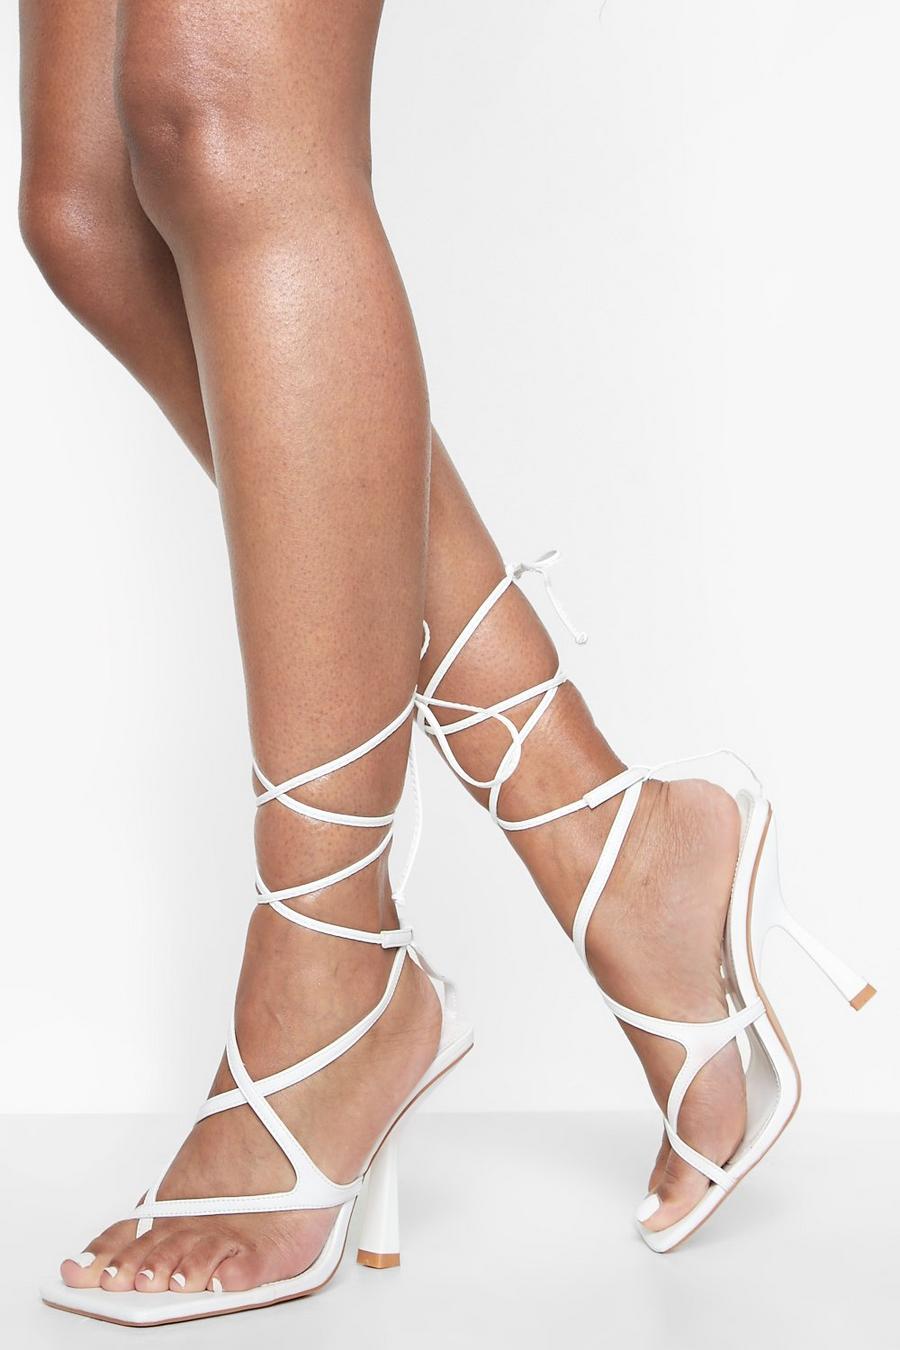 Scarpe a punta quadrata con laccetti alla caviglia e tacco, White bianco